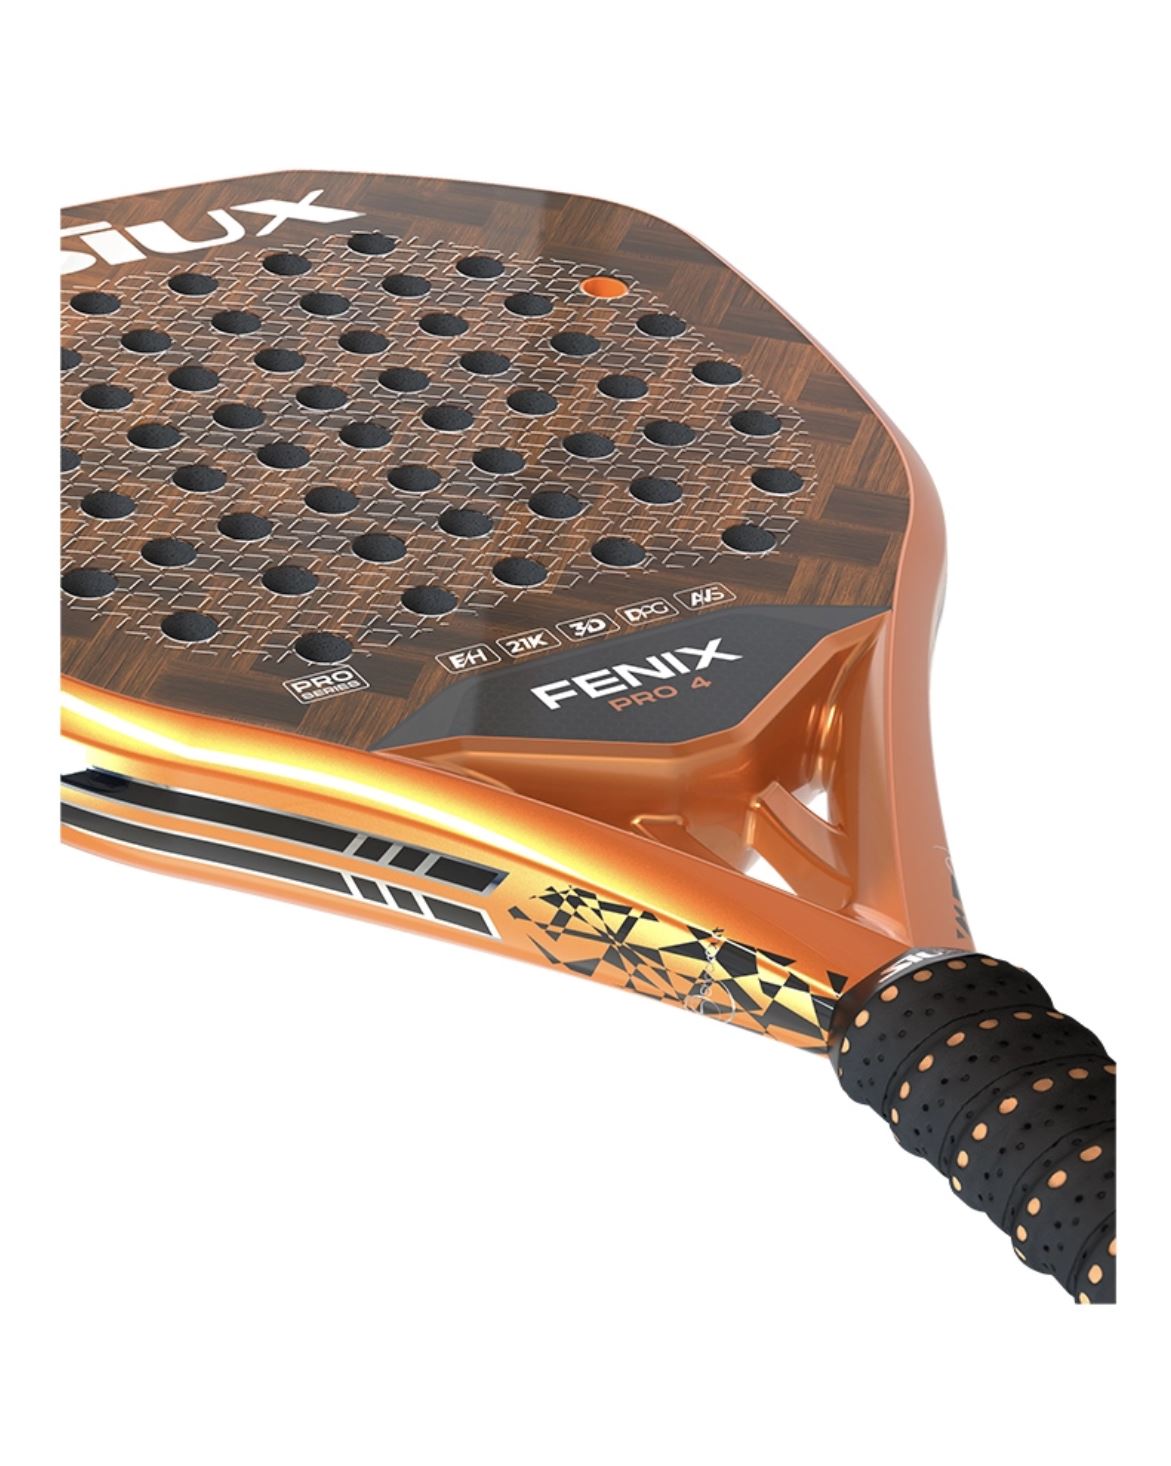 Siux Fenix ​​4 Pro Padelschläger